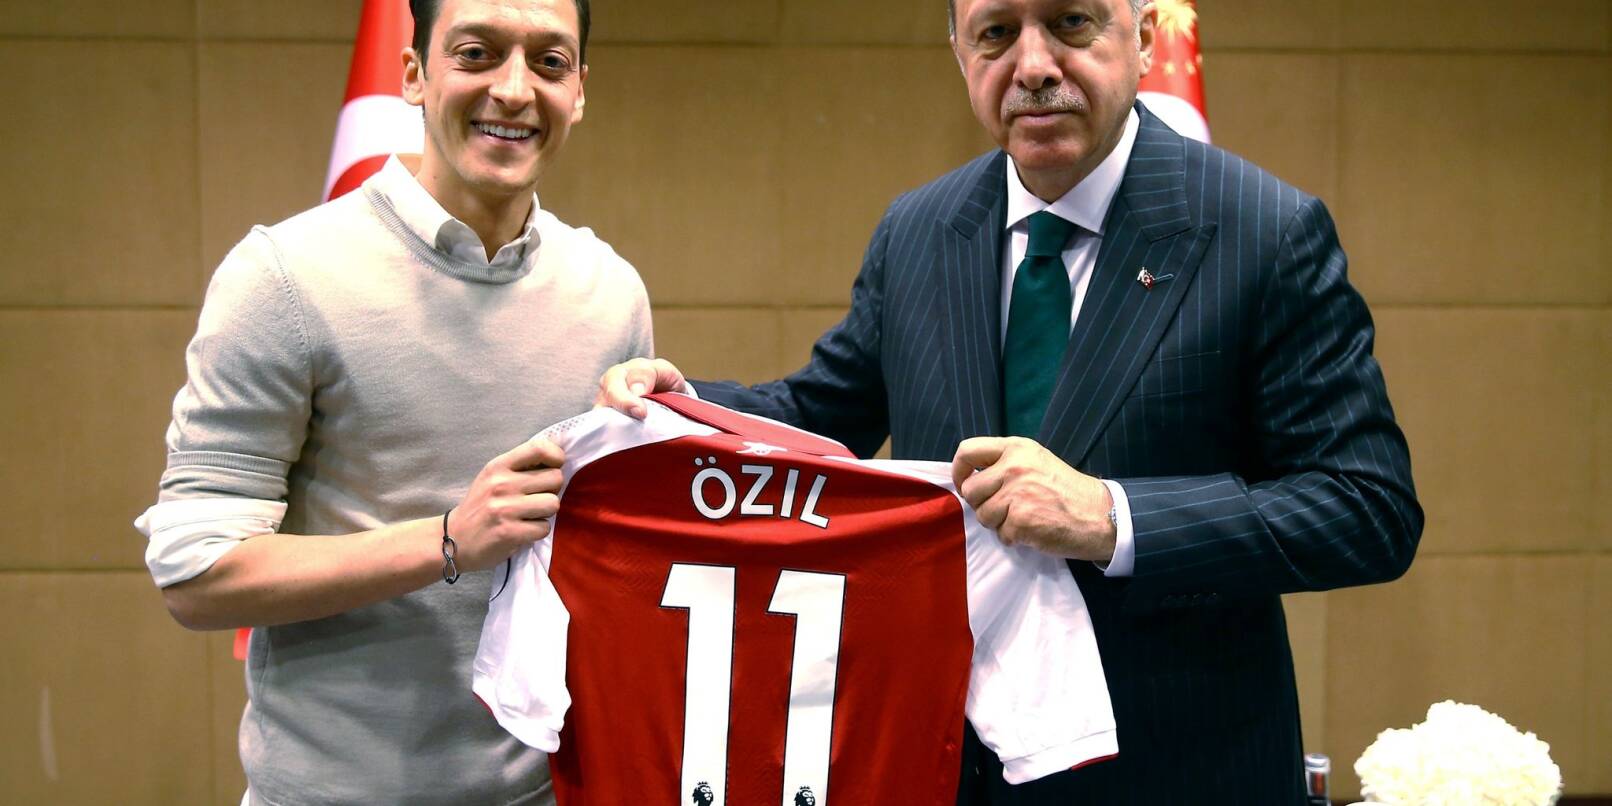 Mesut Özil und Recep Tayyip Erdogan am 14.05.2018. Der Fußballer hat erneut ein Foto mit dem wiedergewählten türkischen Präsidenten geteilt.